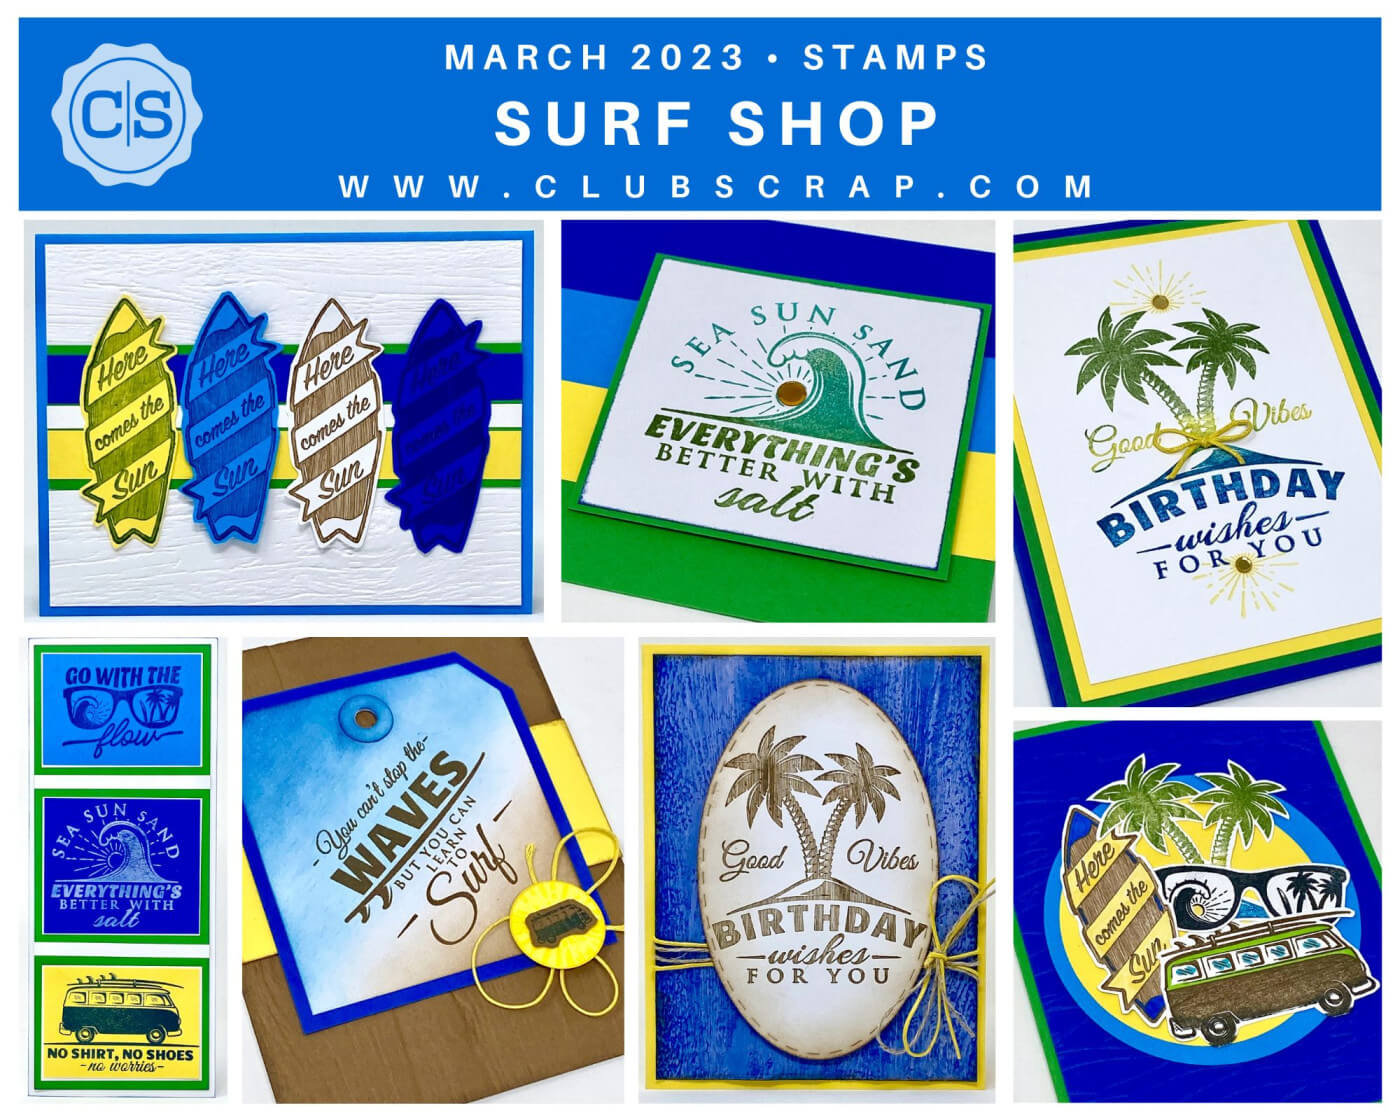 Surf Shop Stamp Spoiler